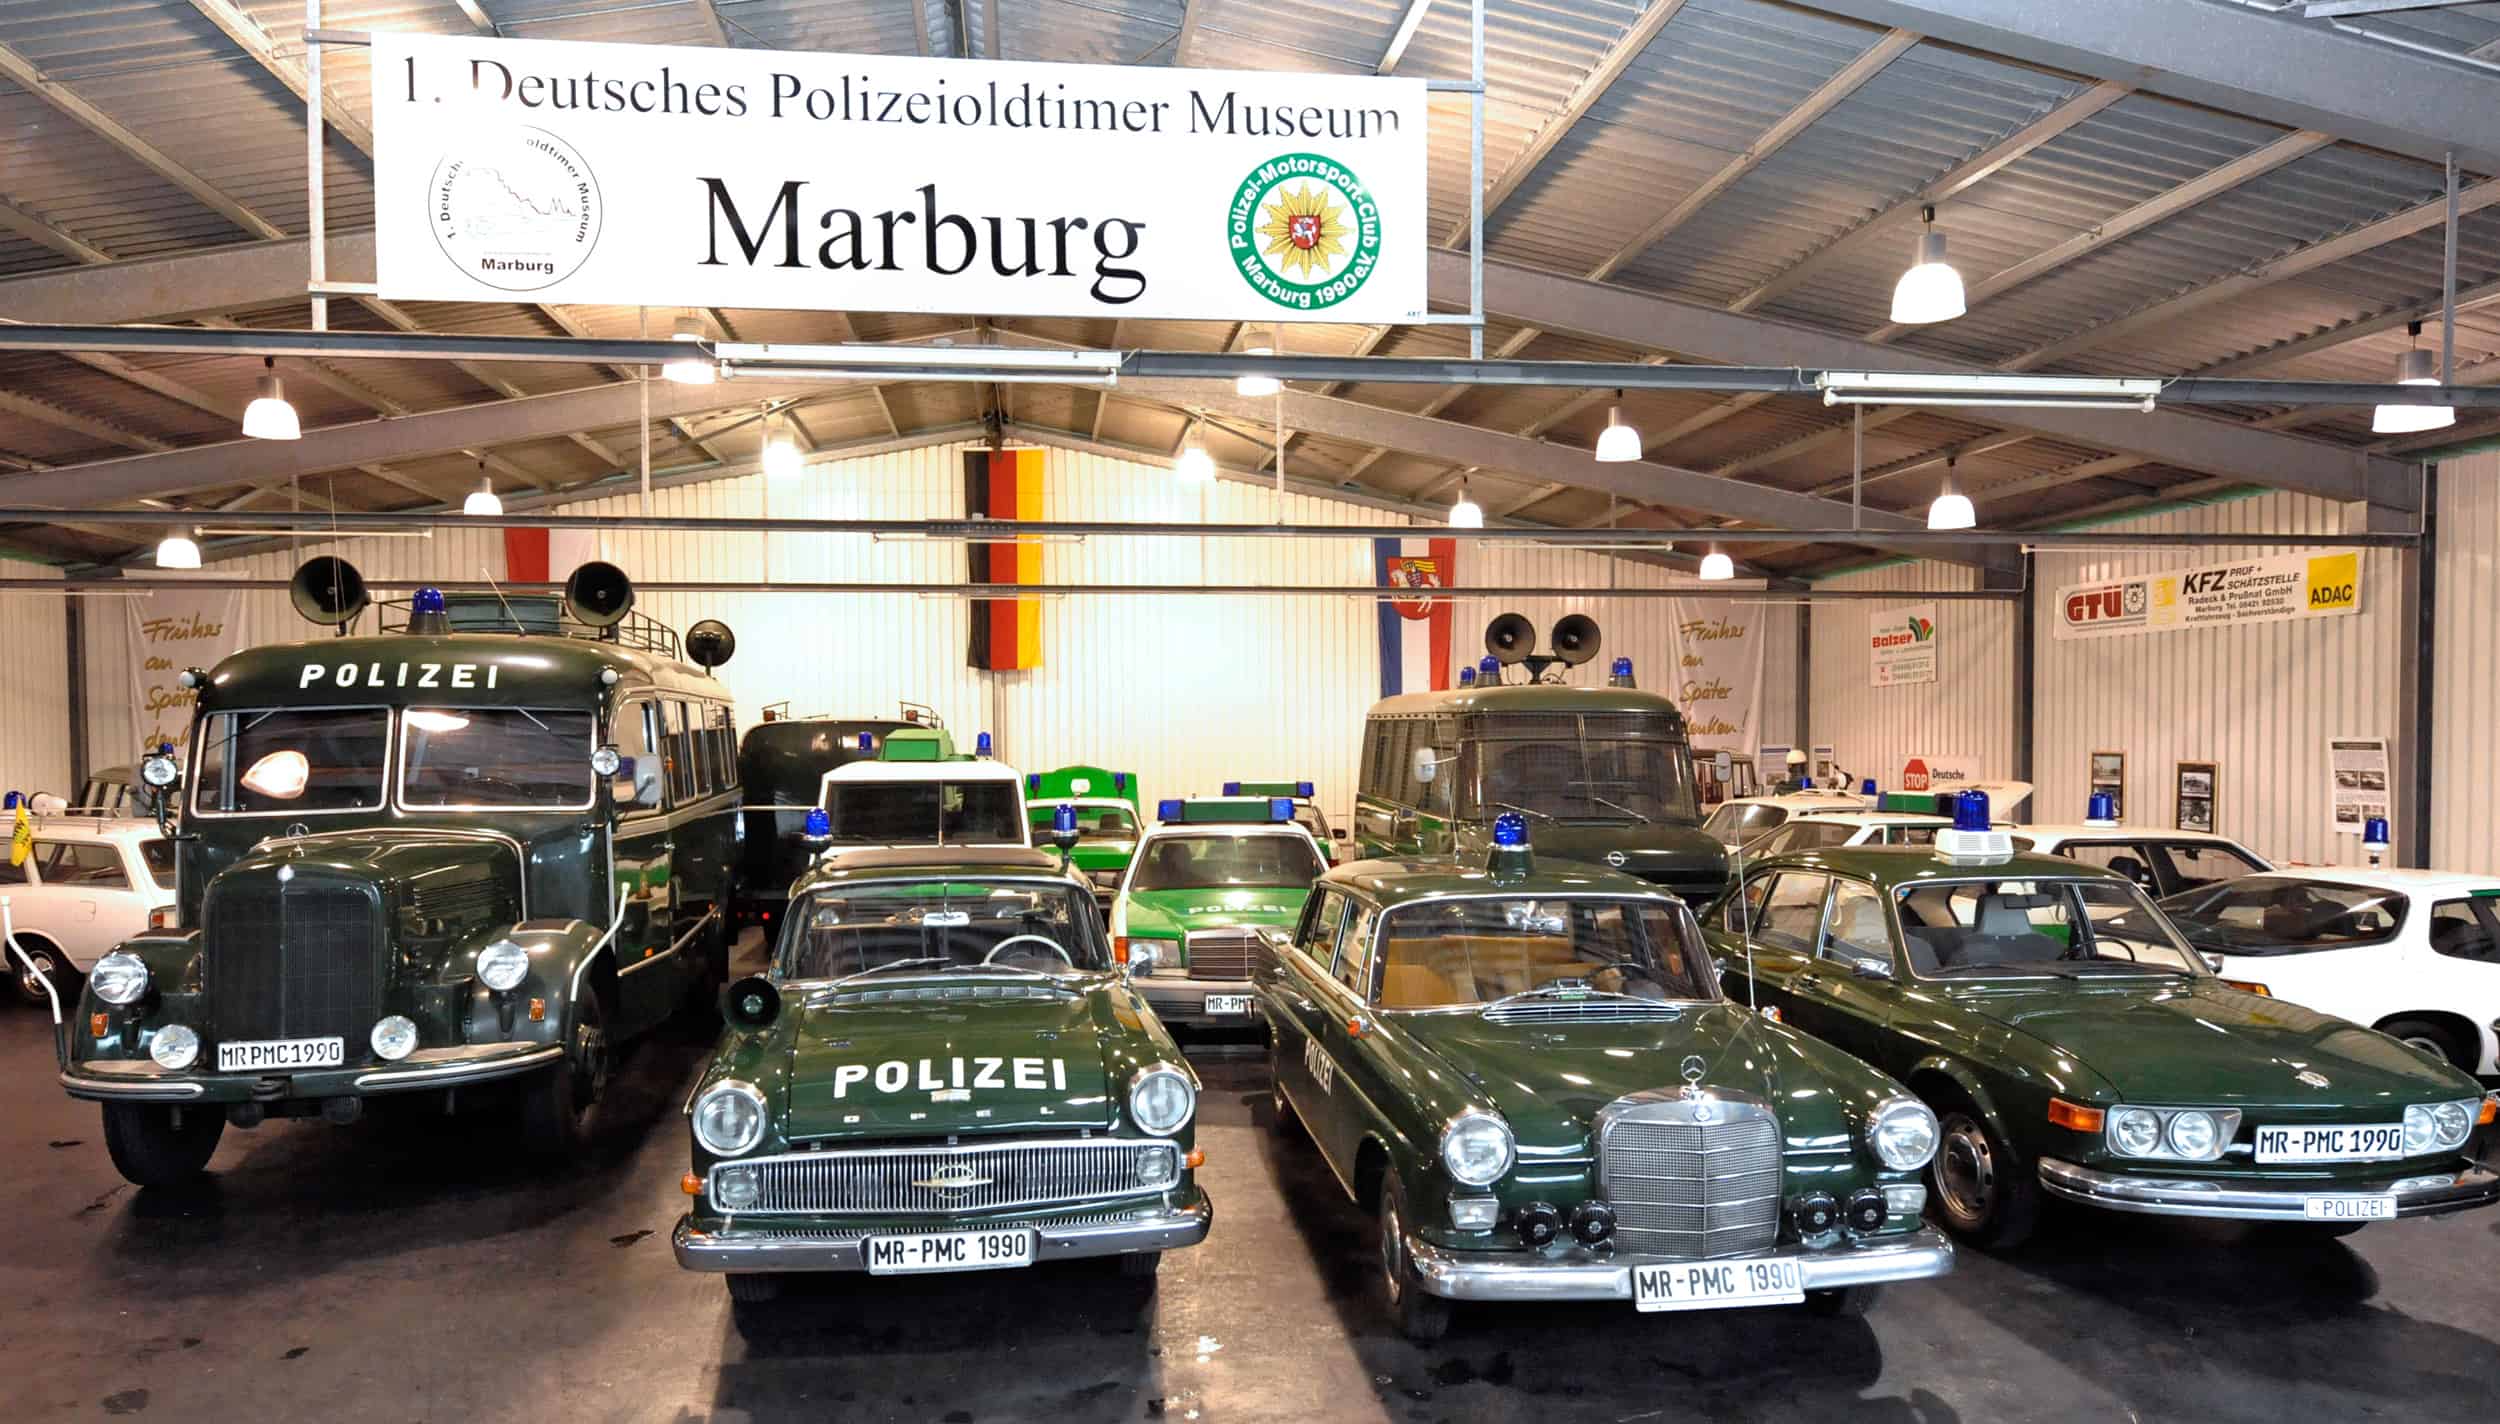 Blick in eine Halle des 1. Deutschen Polizeioldtimer Museums Marburg